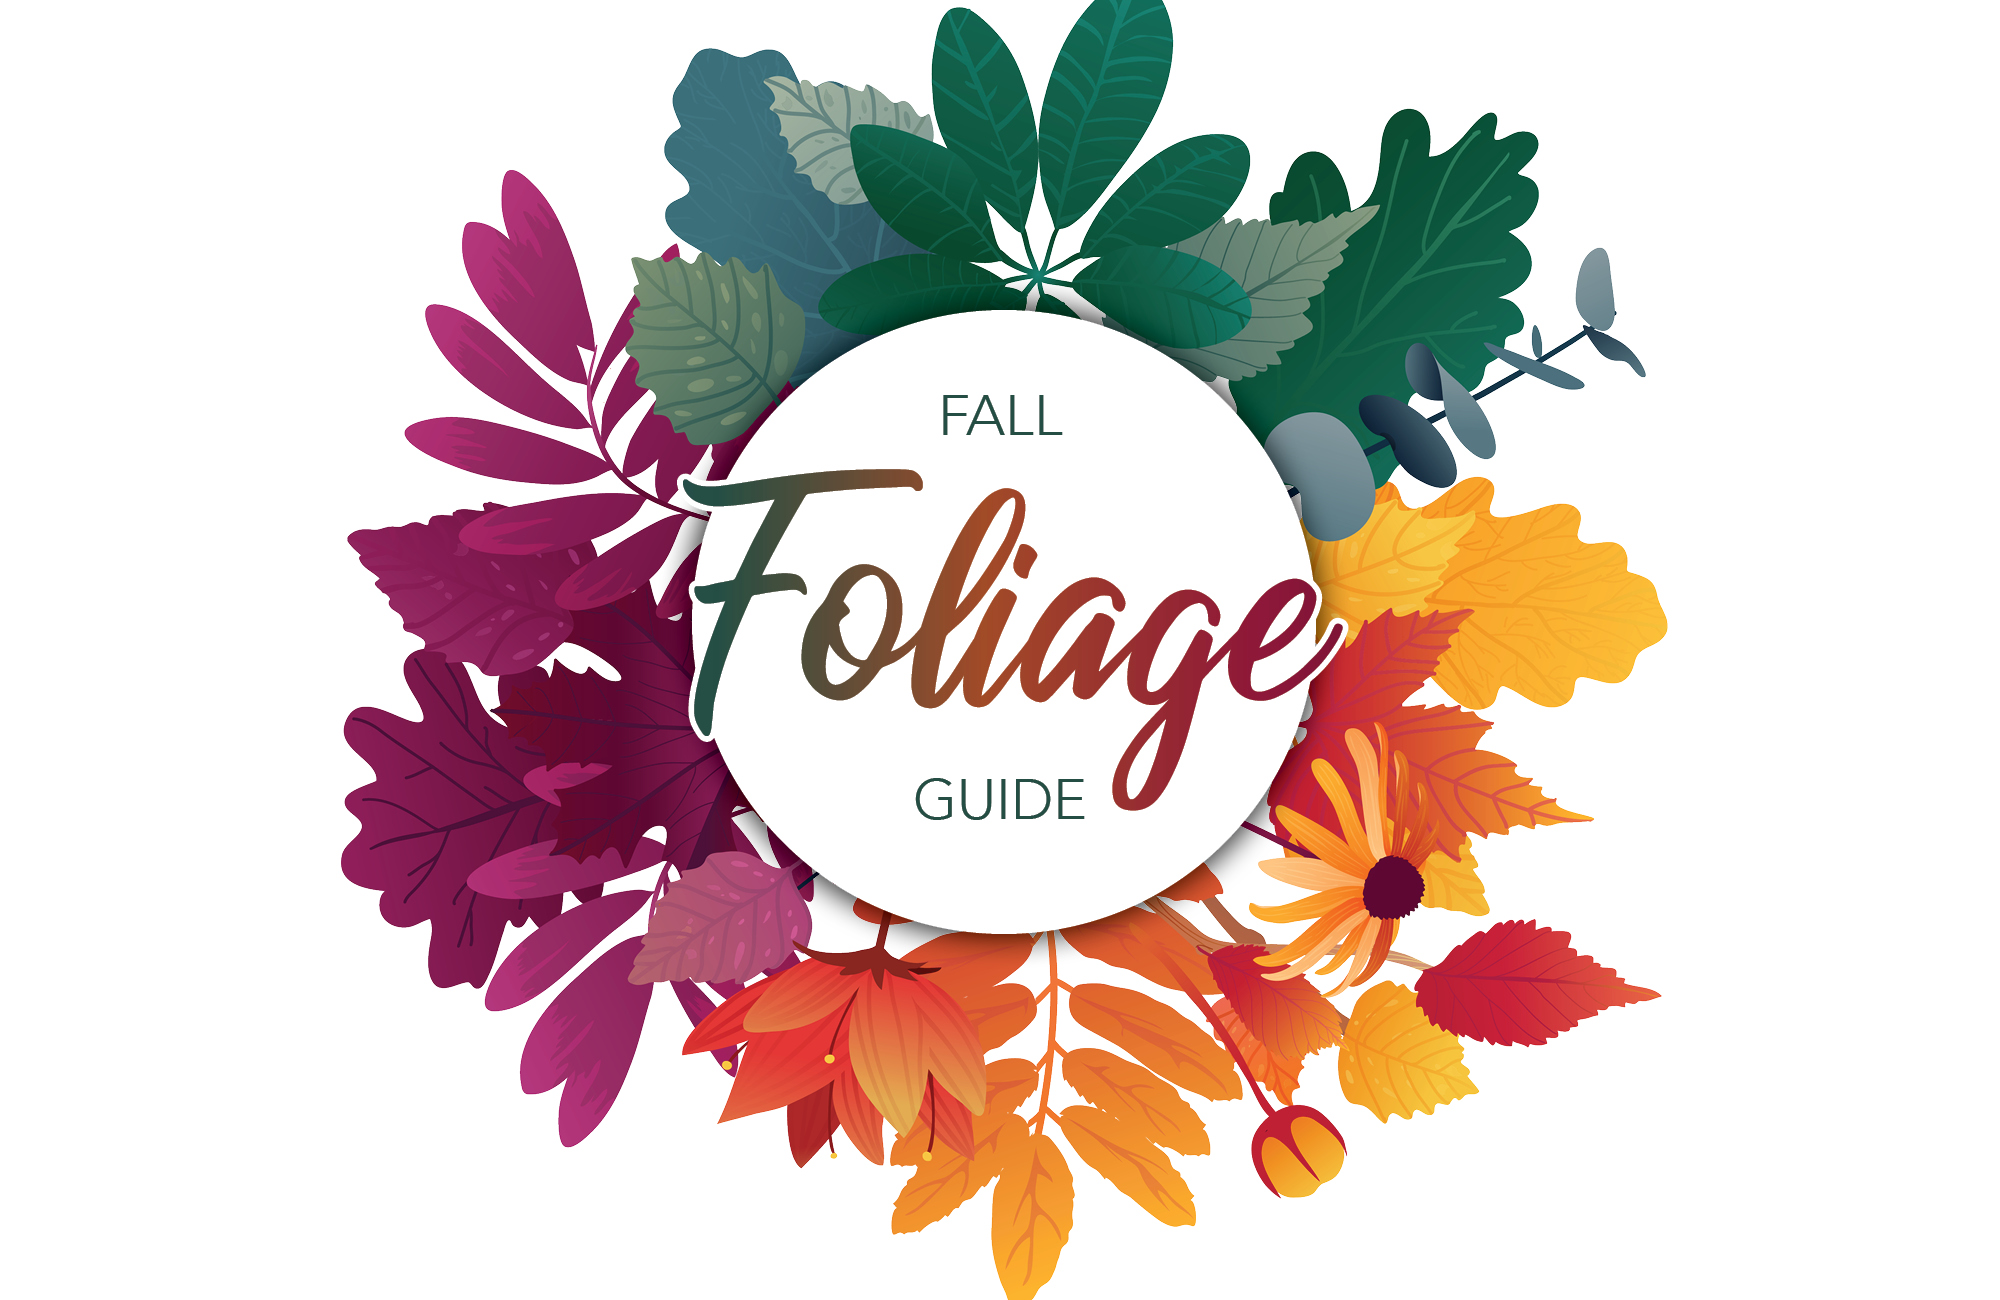 Fall Foliage Guide